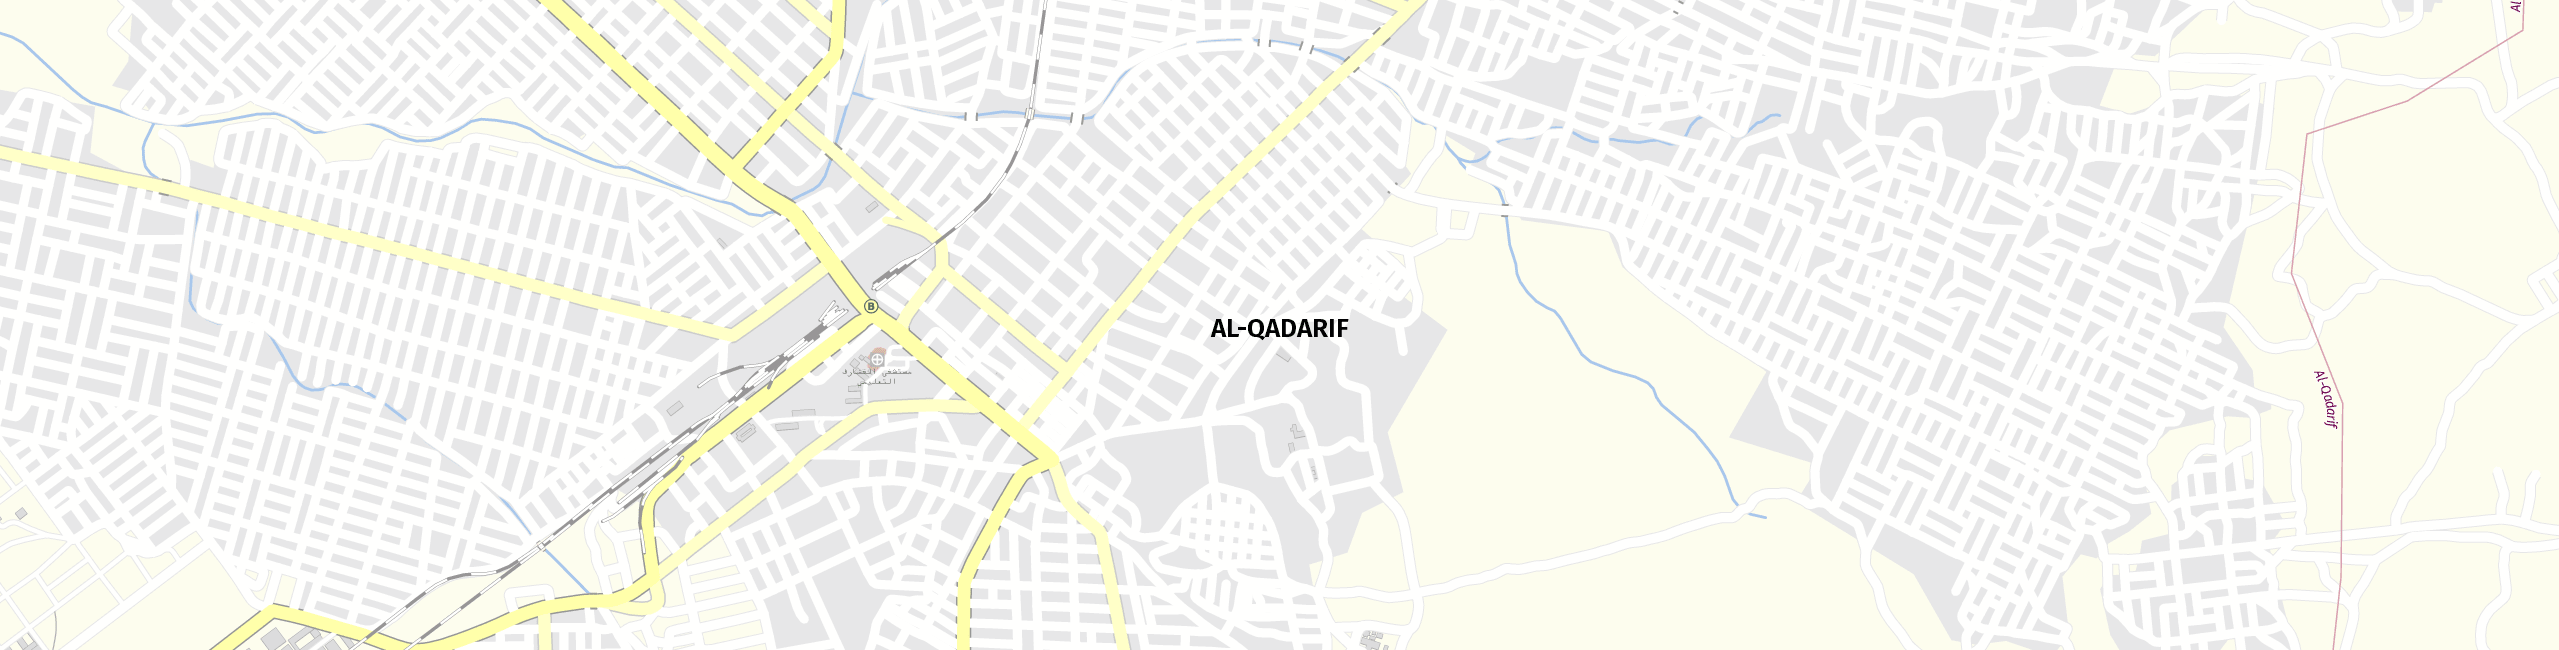 Stadtplan al Qadarif zum Downloaden.